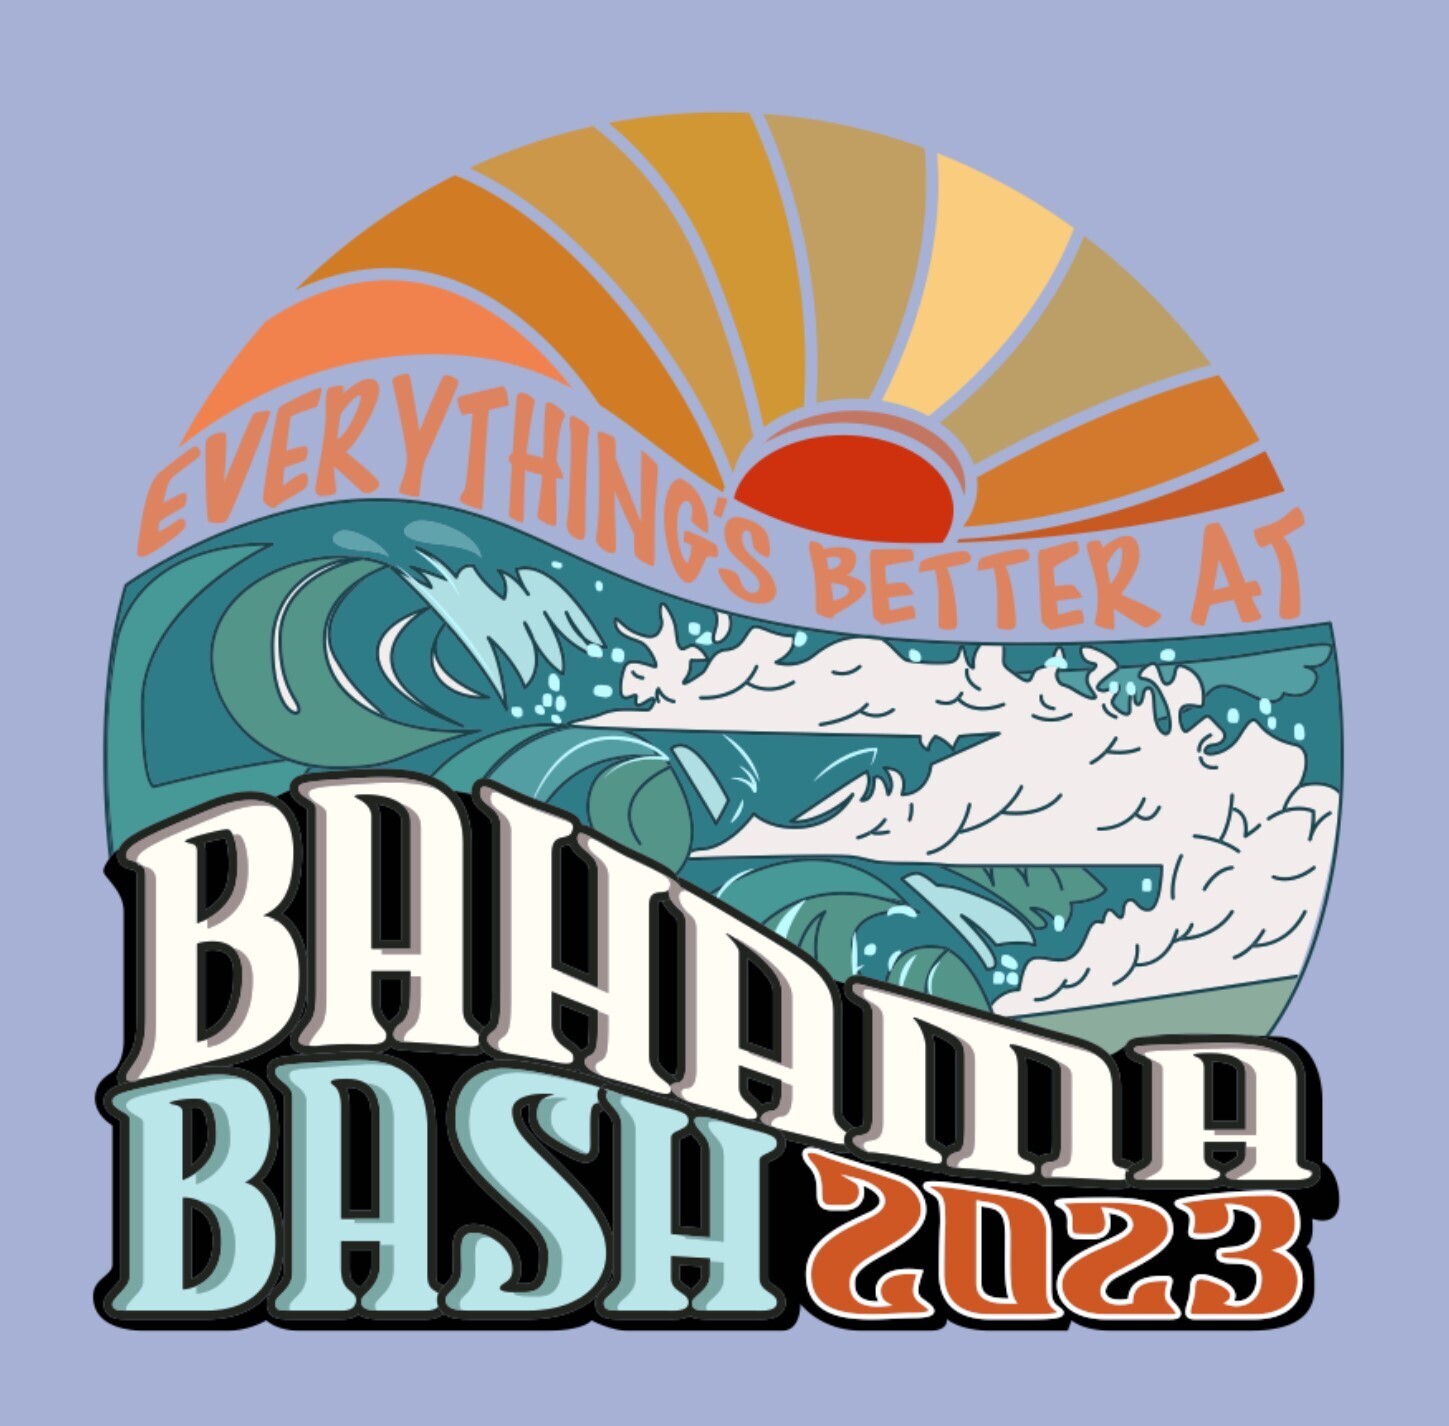 Bahama Bash Student T-Shirt